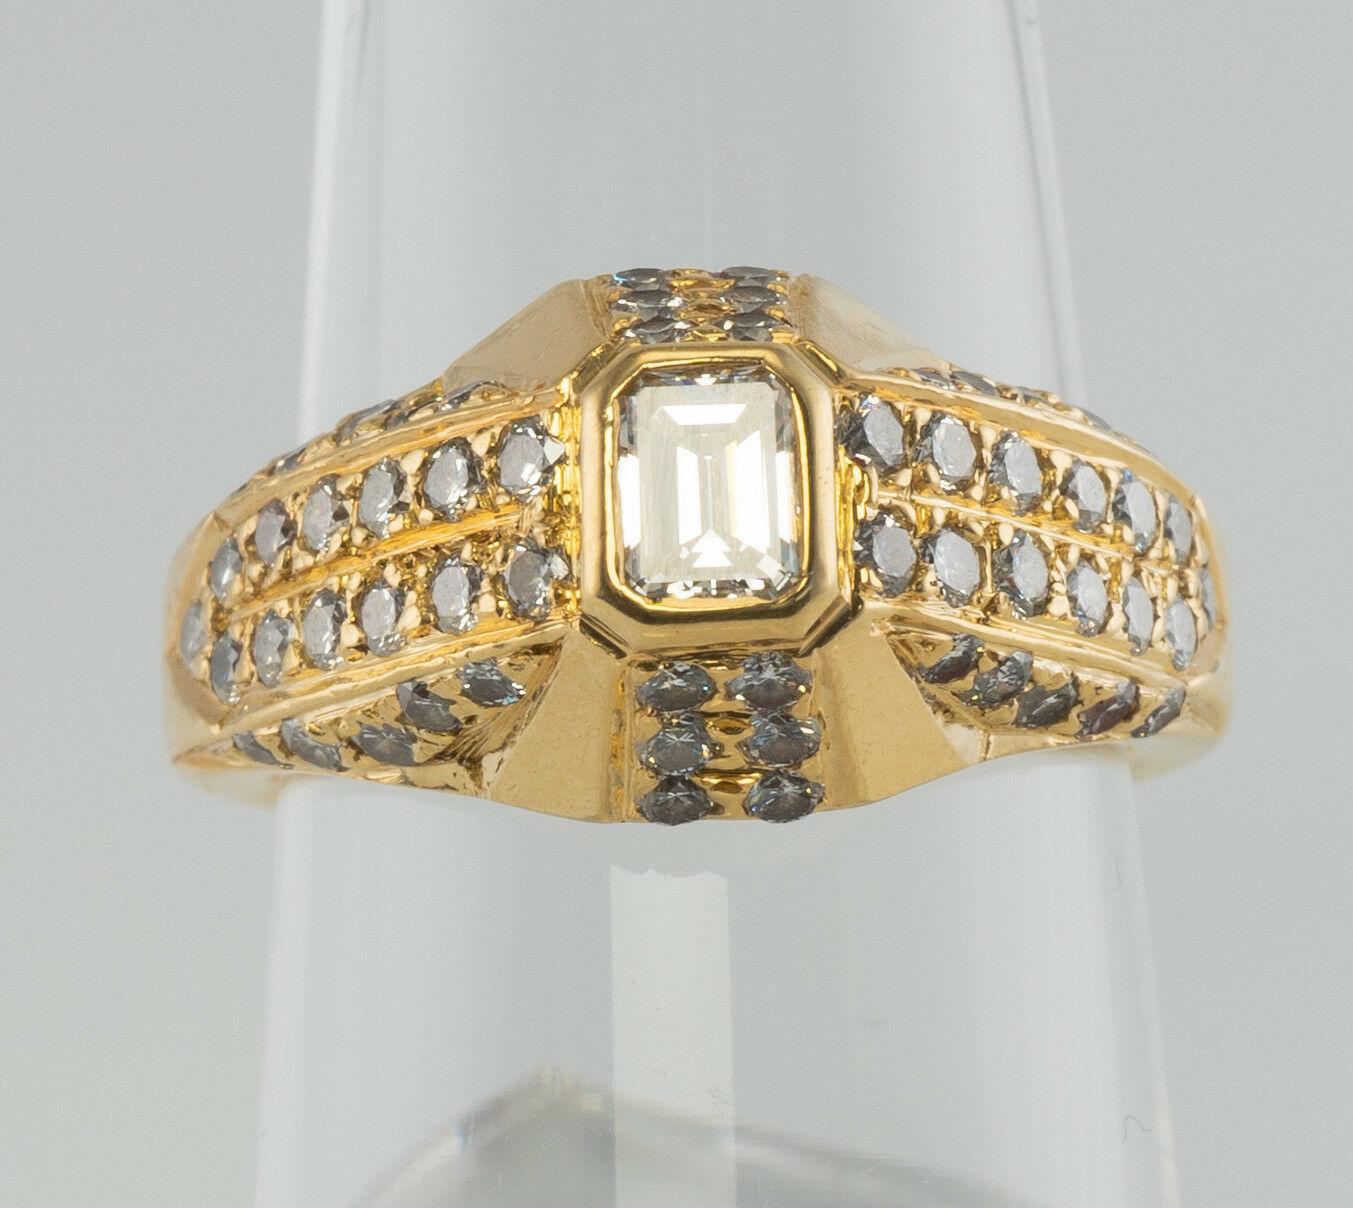 Cette superbe pièce de collection est finement réalisée en or massif 18 carats et sertie de merveilleux diamants blancs. L'anneau porte le poinçon T inside C. La pierre centrale, de taille émeraude, mesure 4 mm x 3 mm (0,19 carat). Cinquante-huit